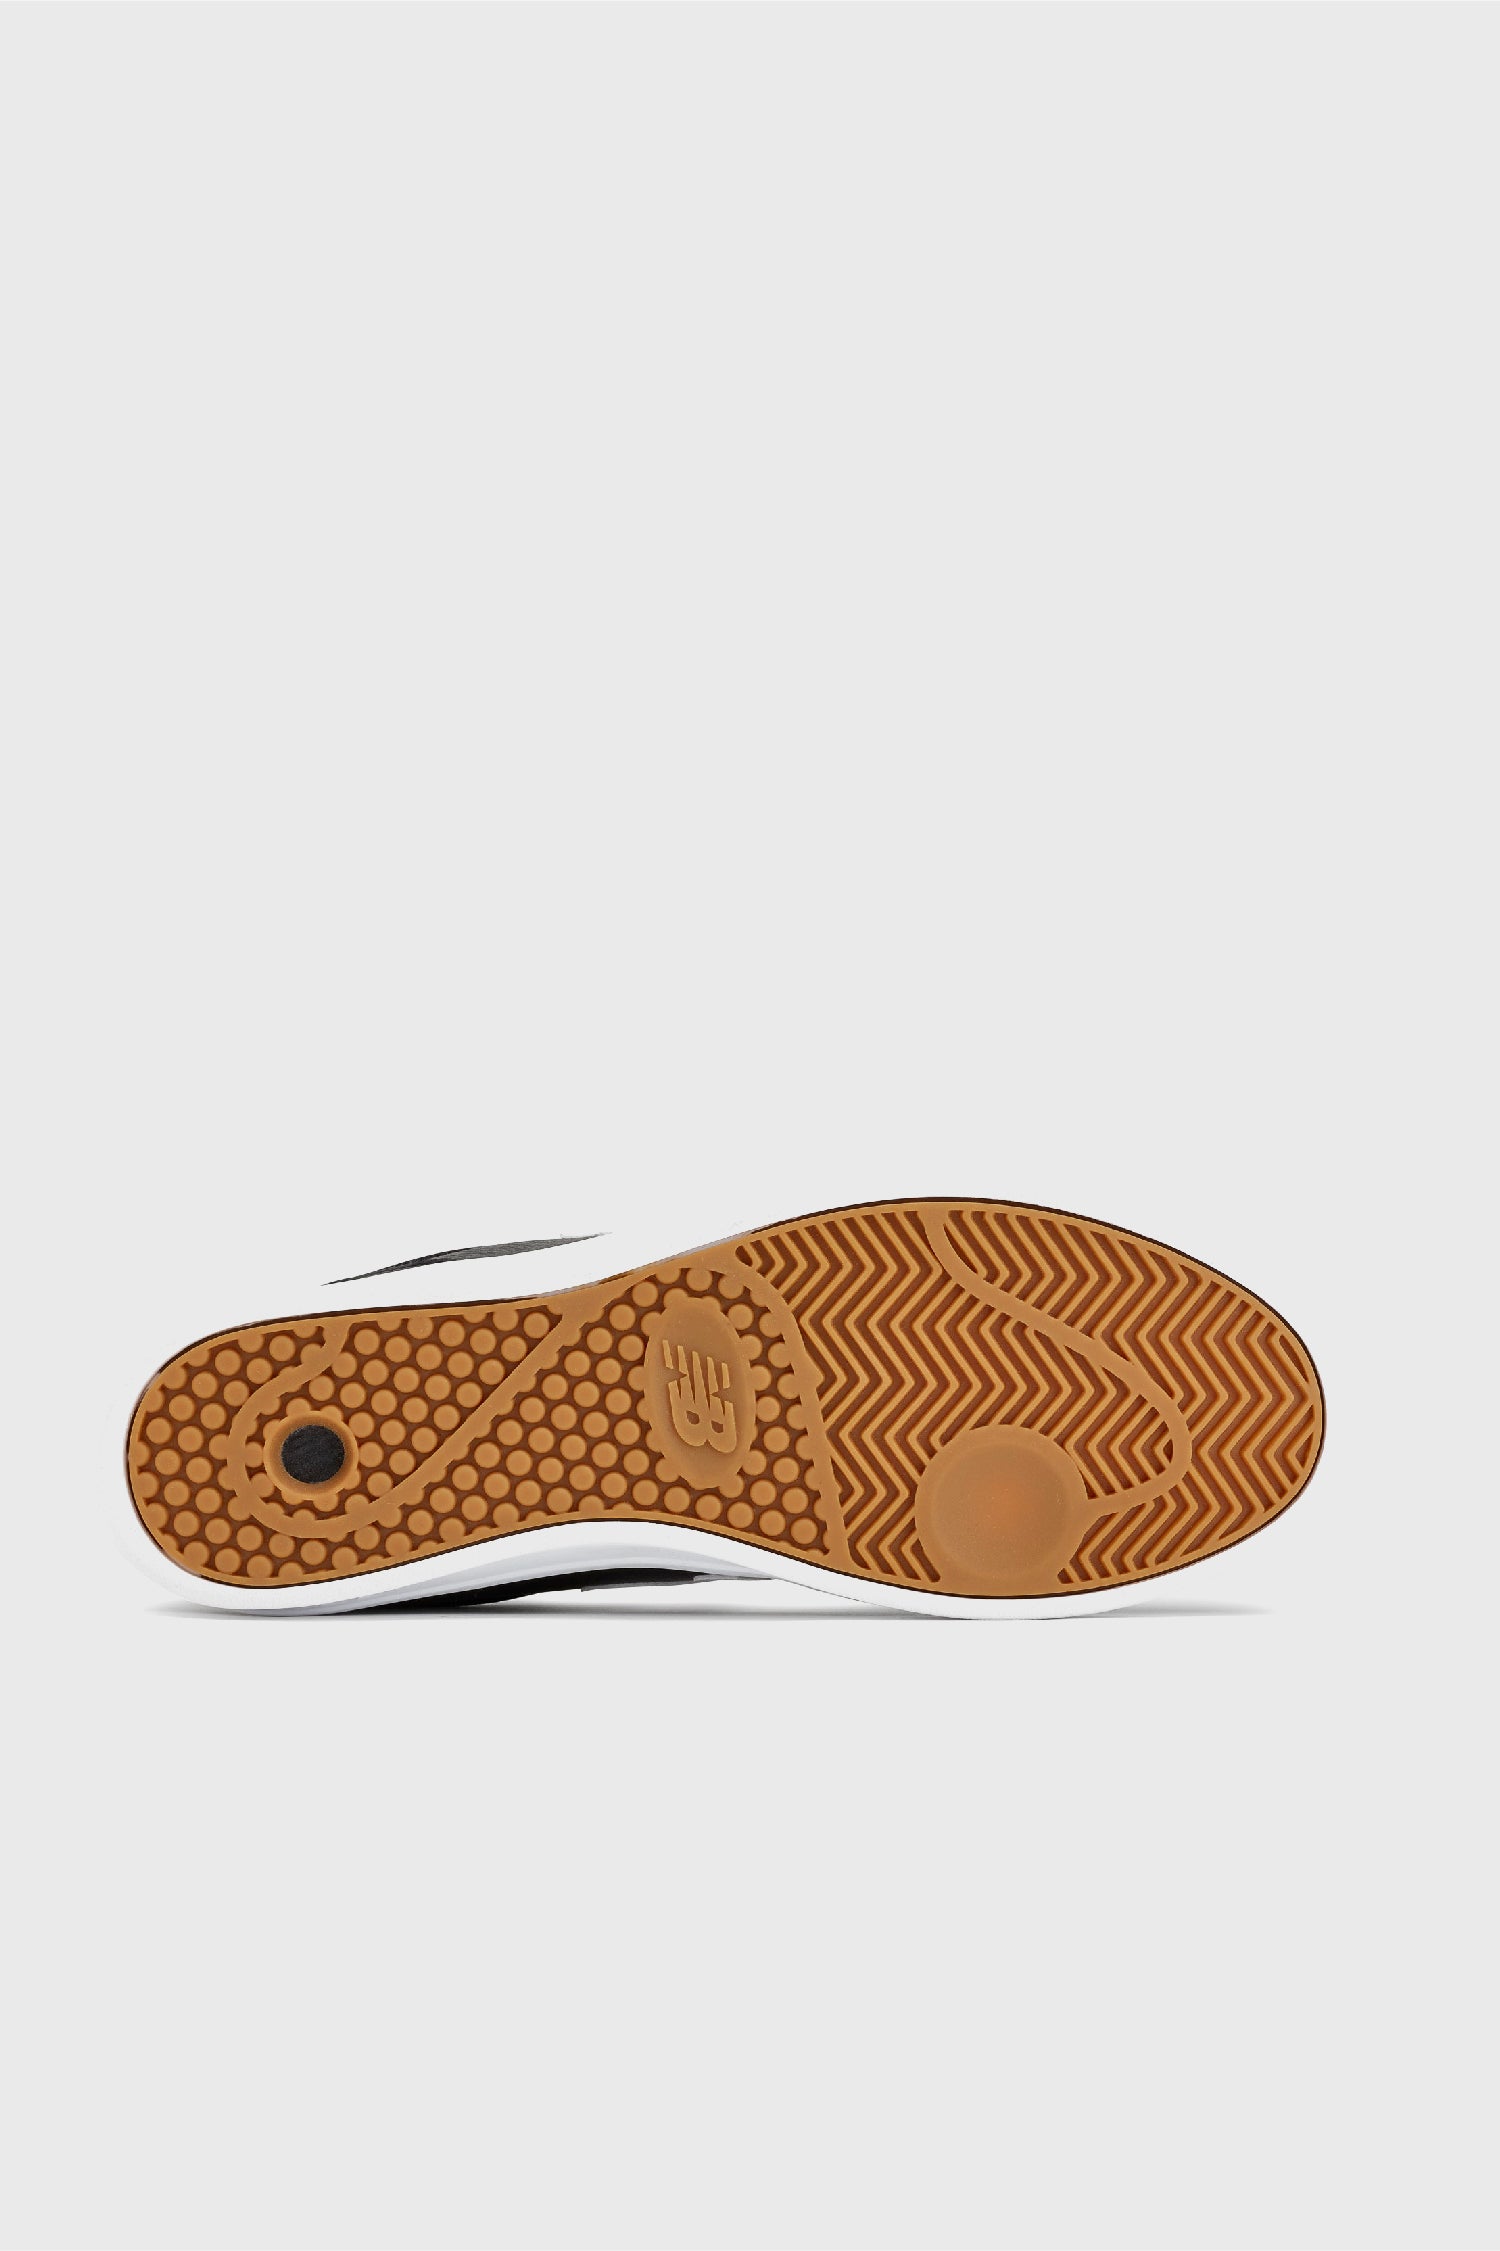 Selectshop FRAME - COMME DES GARÇONS HOMME Comme des Garçons Homme x New Balance CT300 Footwear Dubai